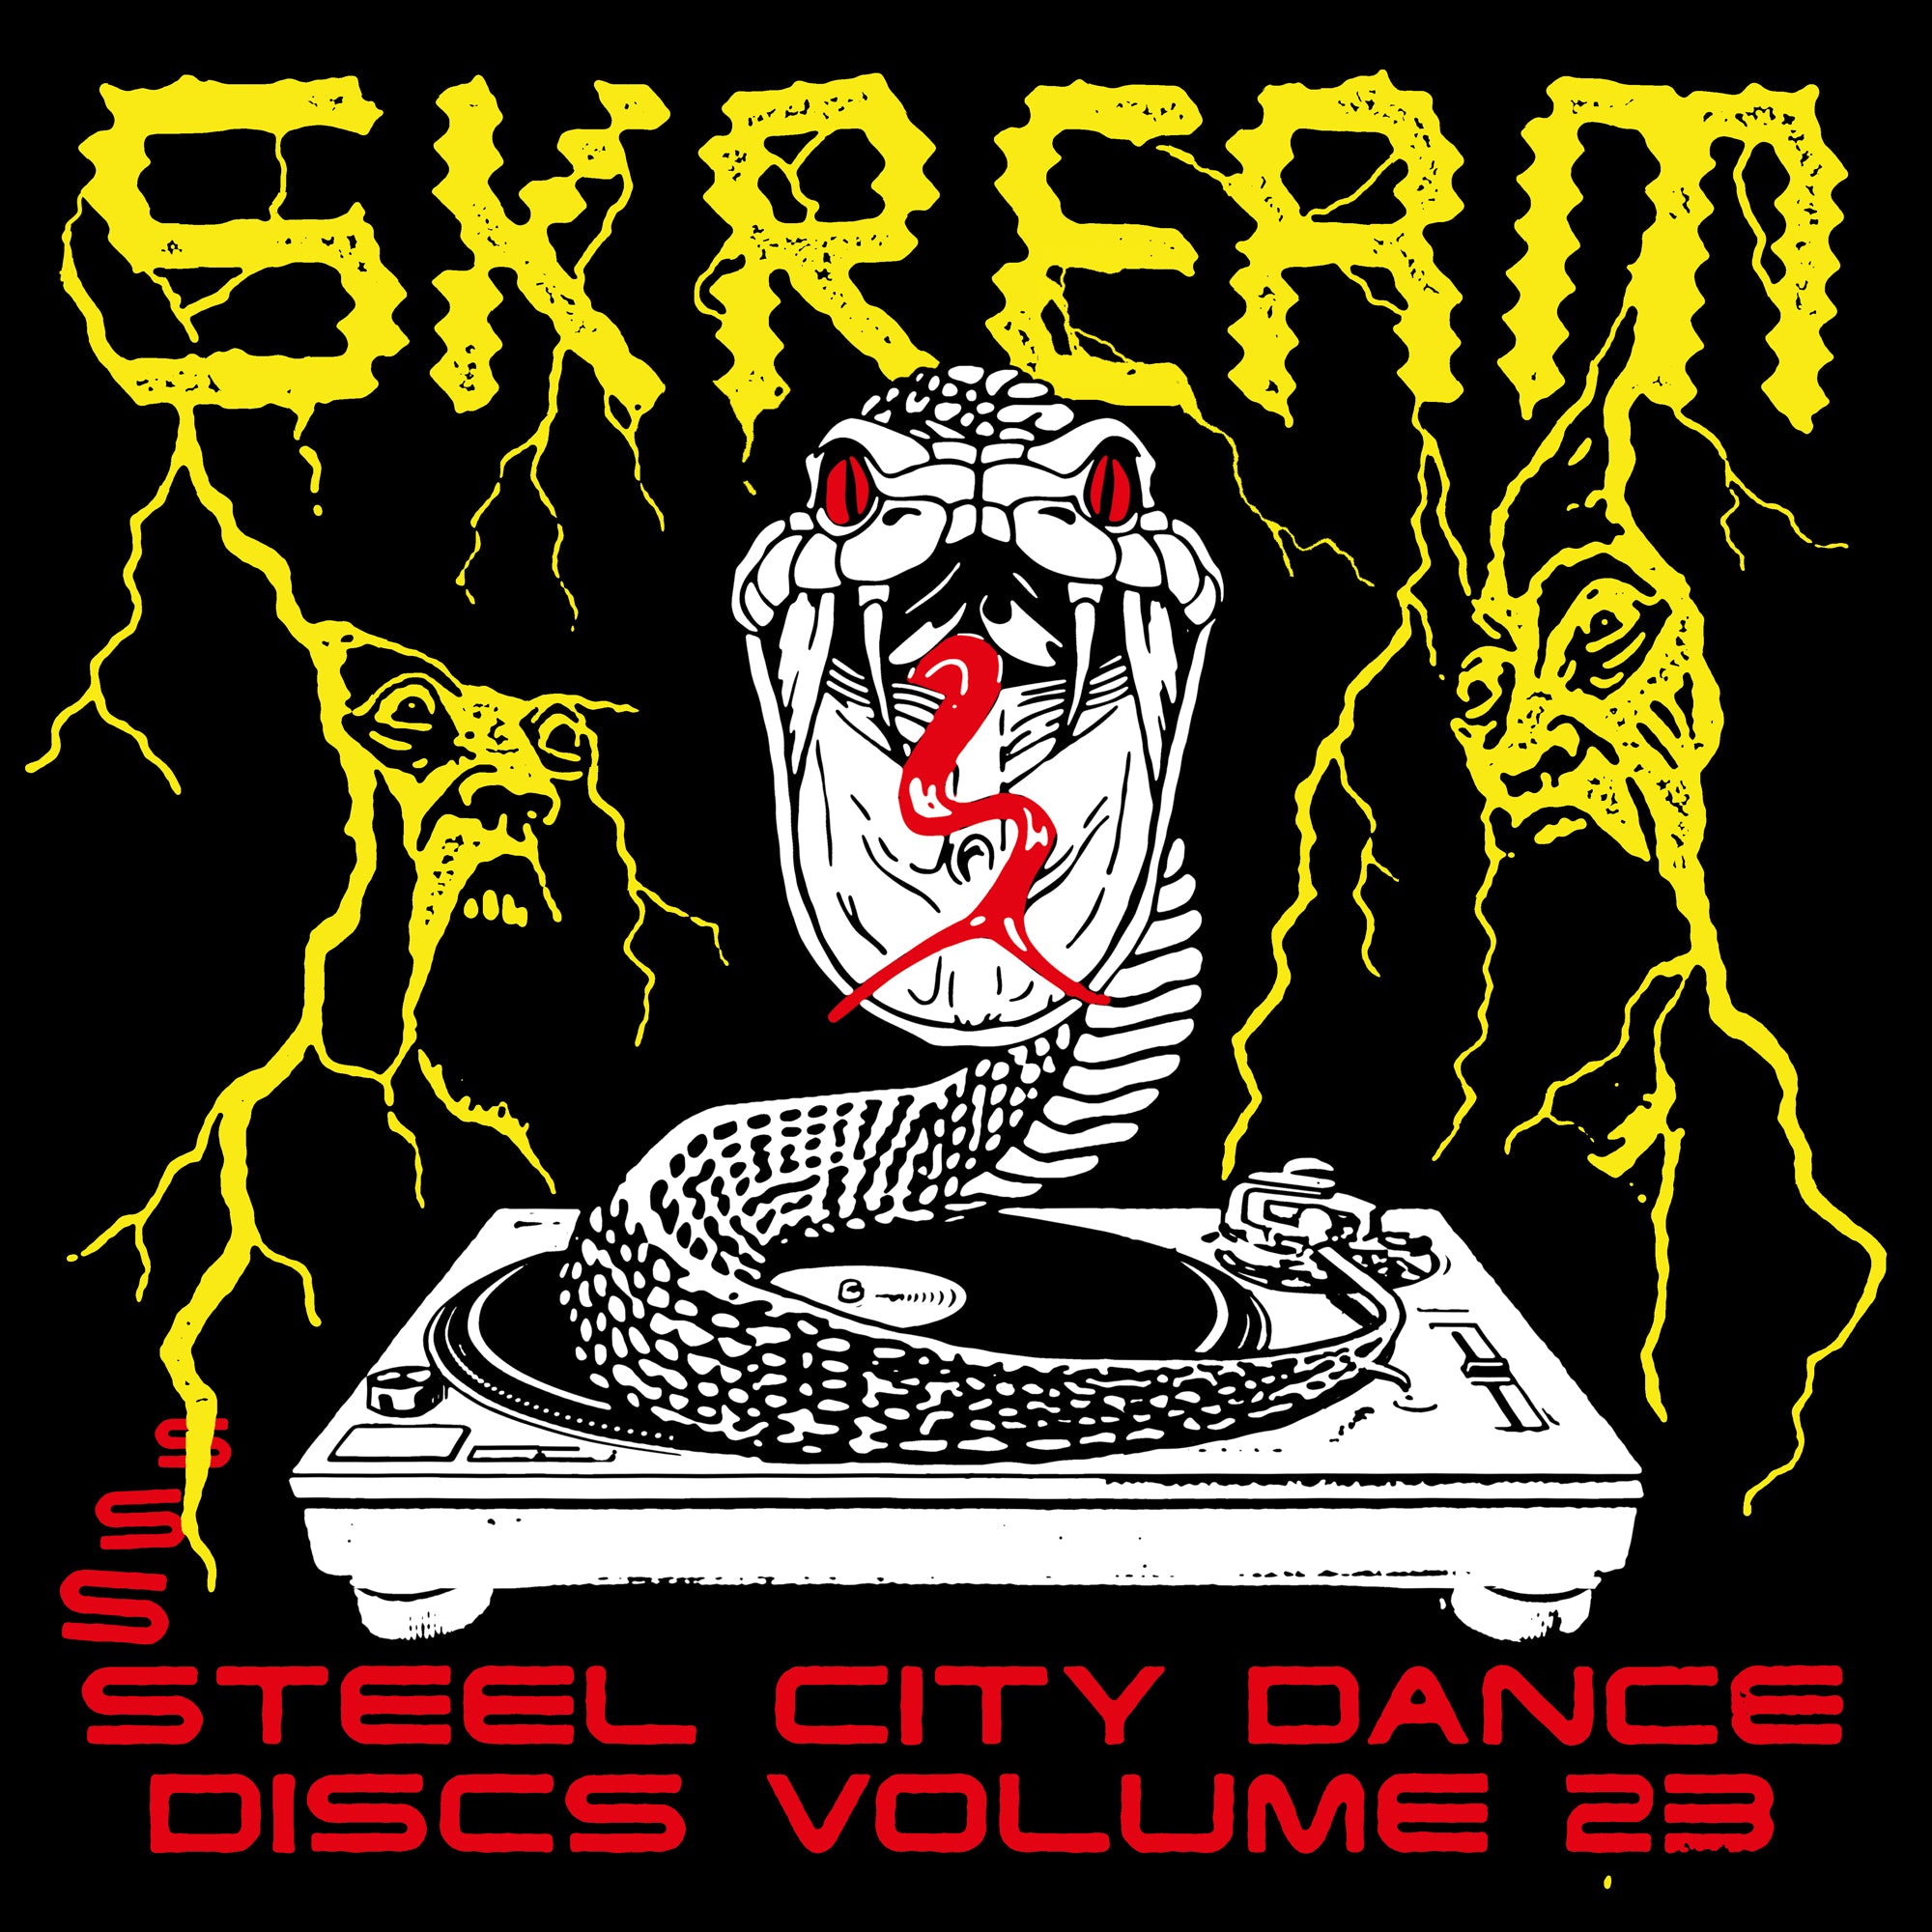 Skream 'Steel City Dance Discs Volume 23' 12"